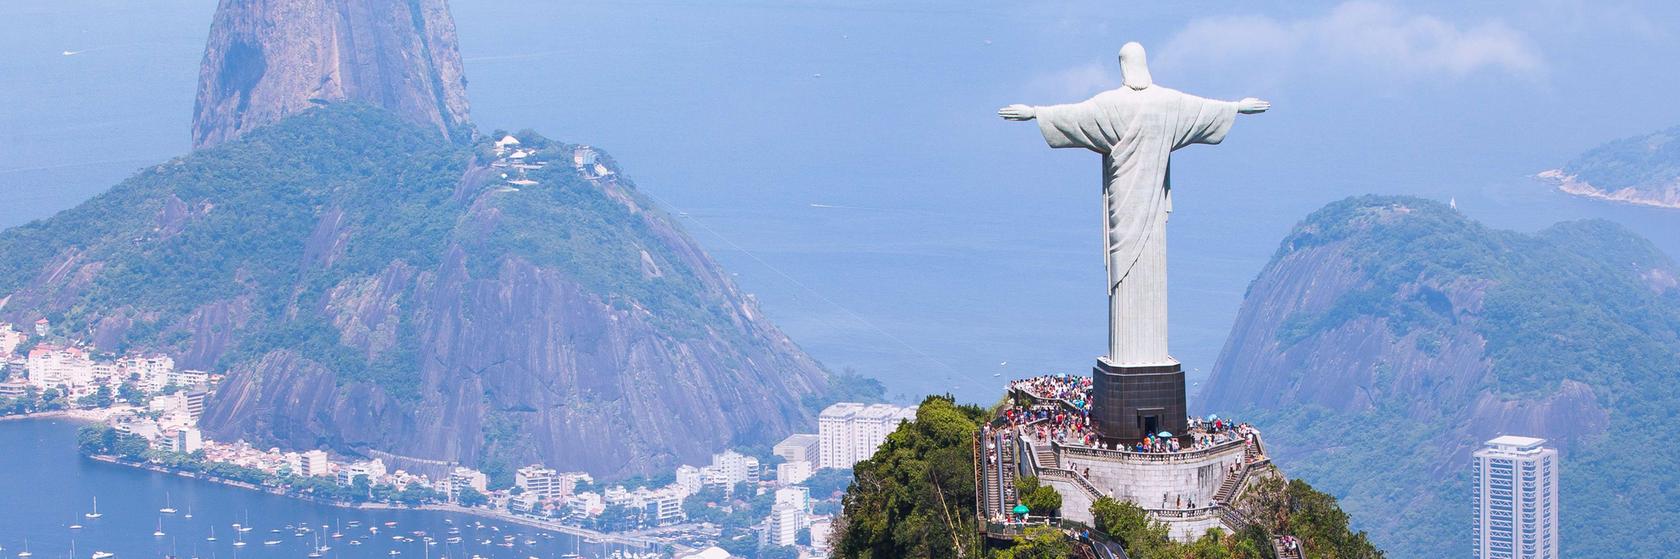 Kde výhodně nakoupit Rio de Janeiru a okolí